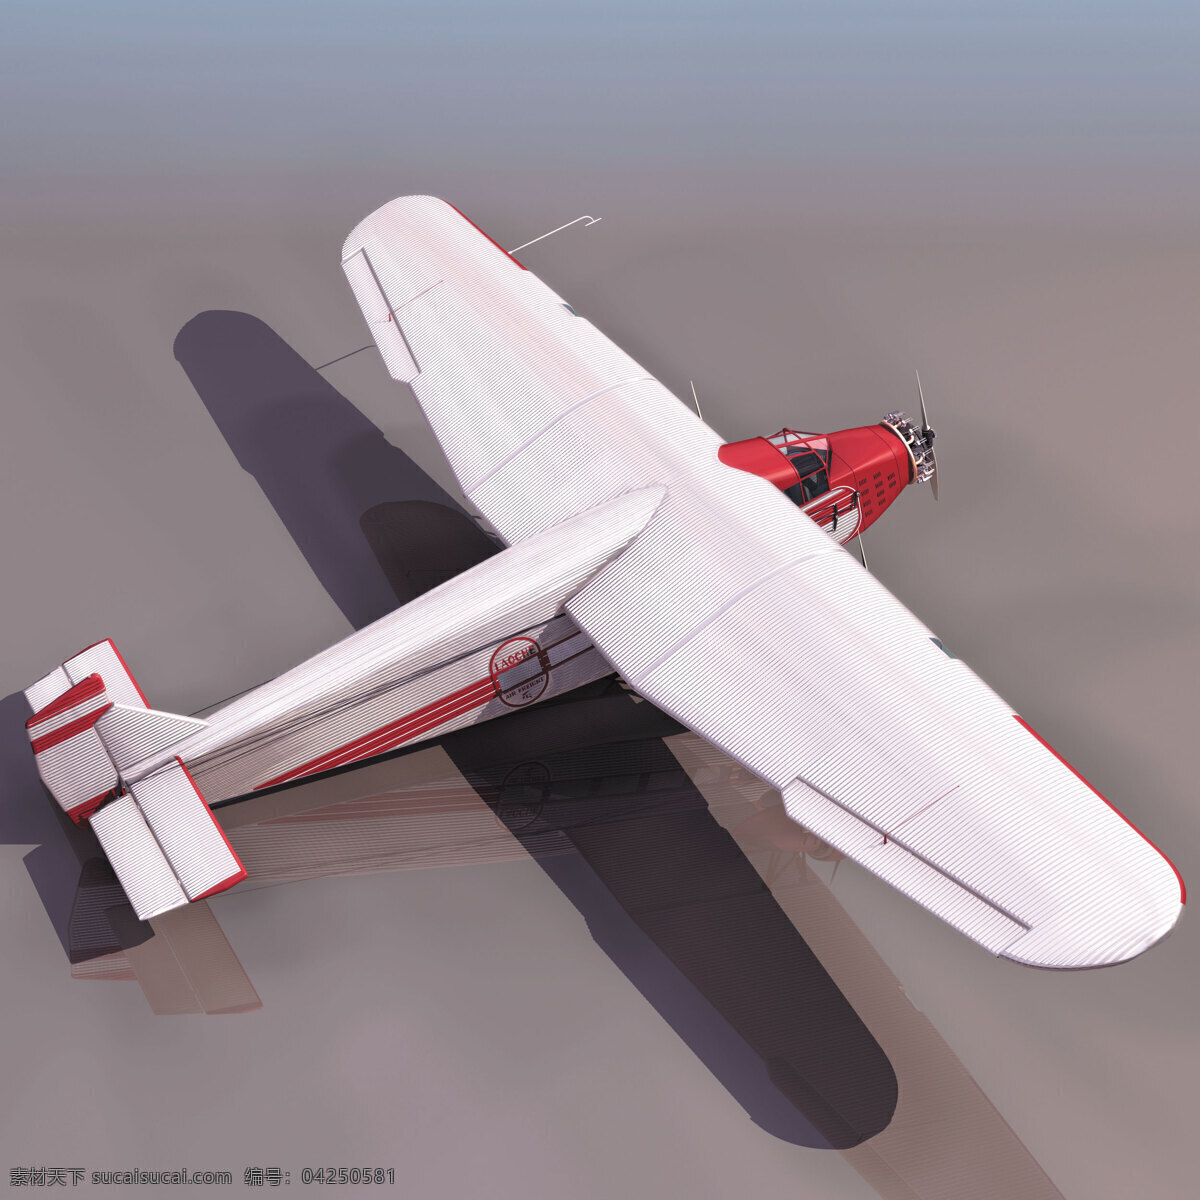 小型 私人 飞机模型 3d 客机 3d模型素材 其他3d模型